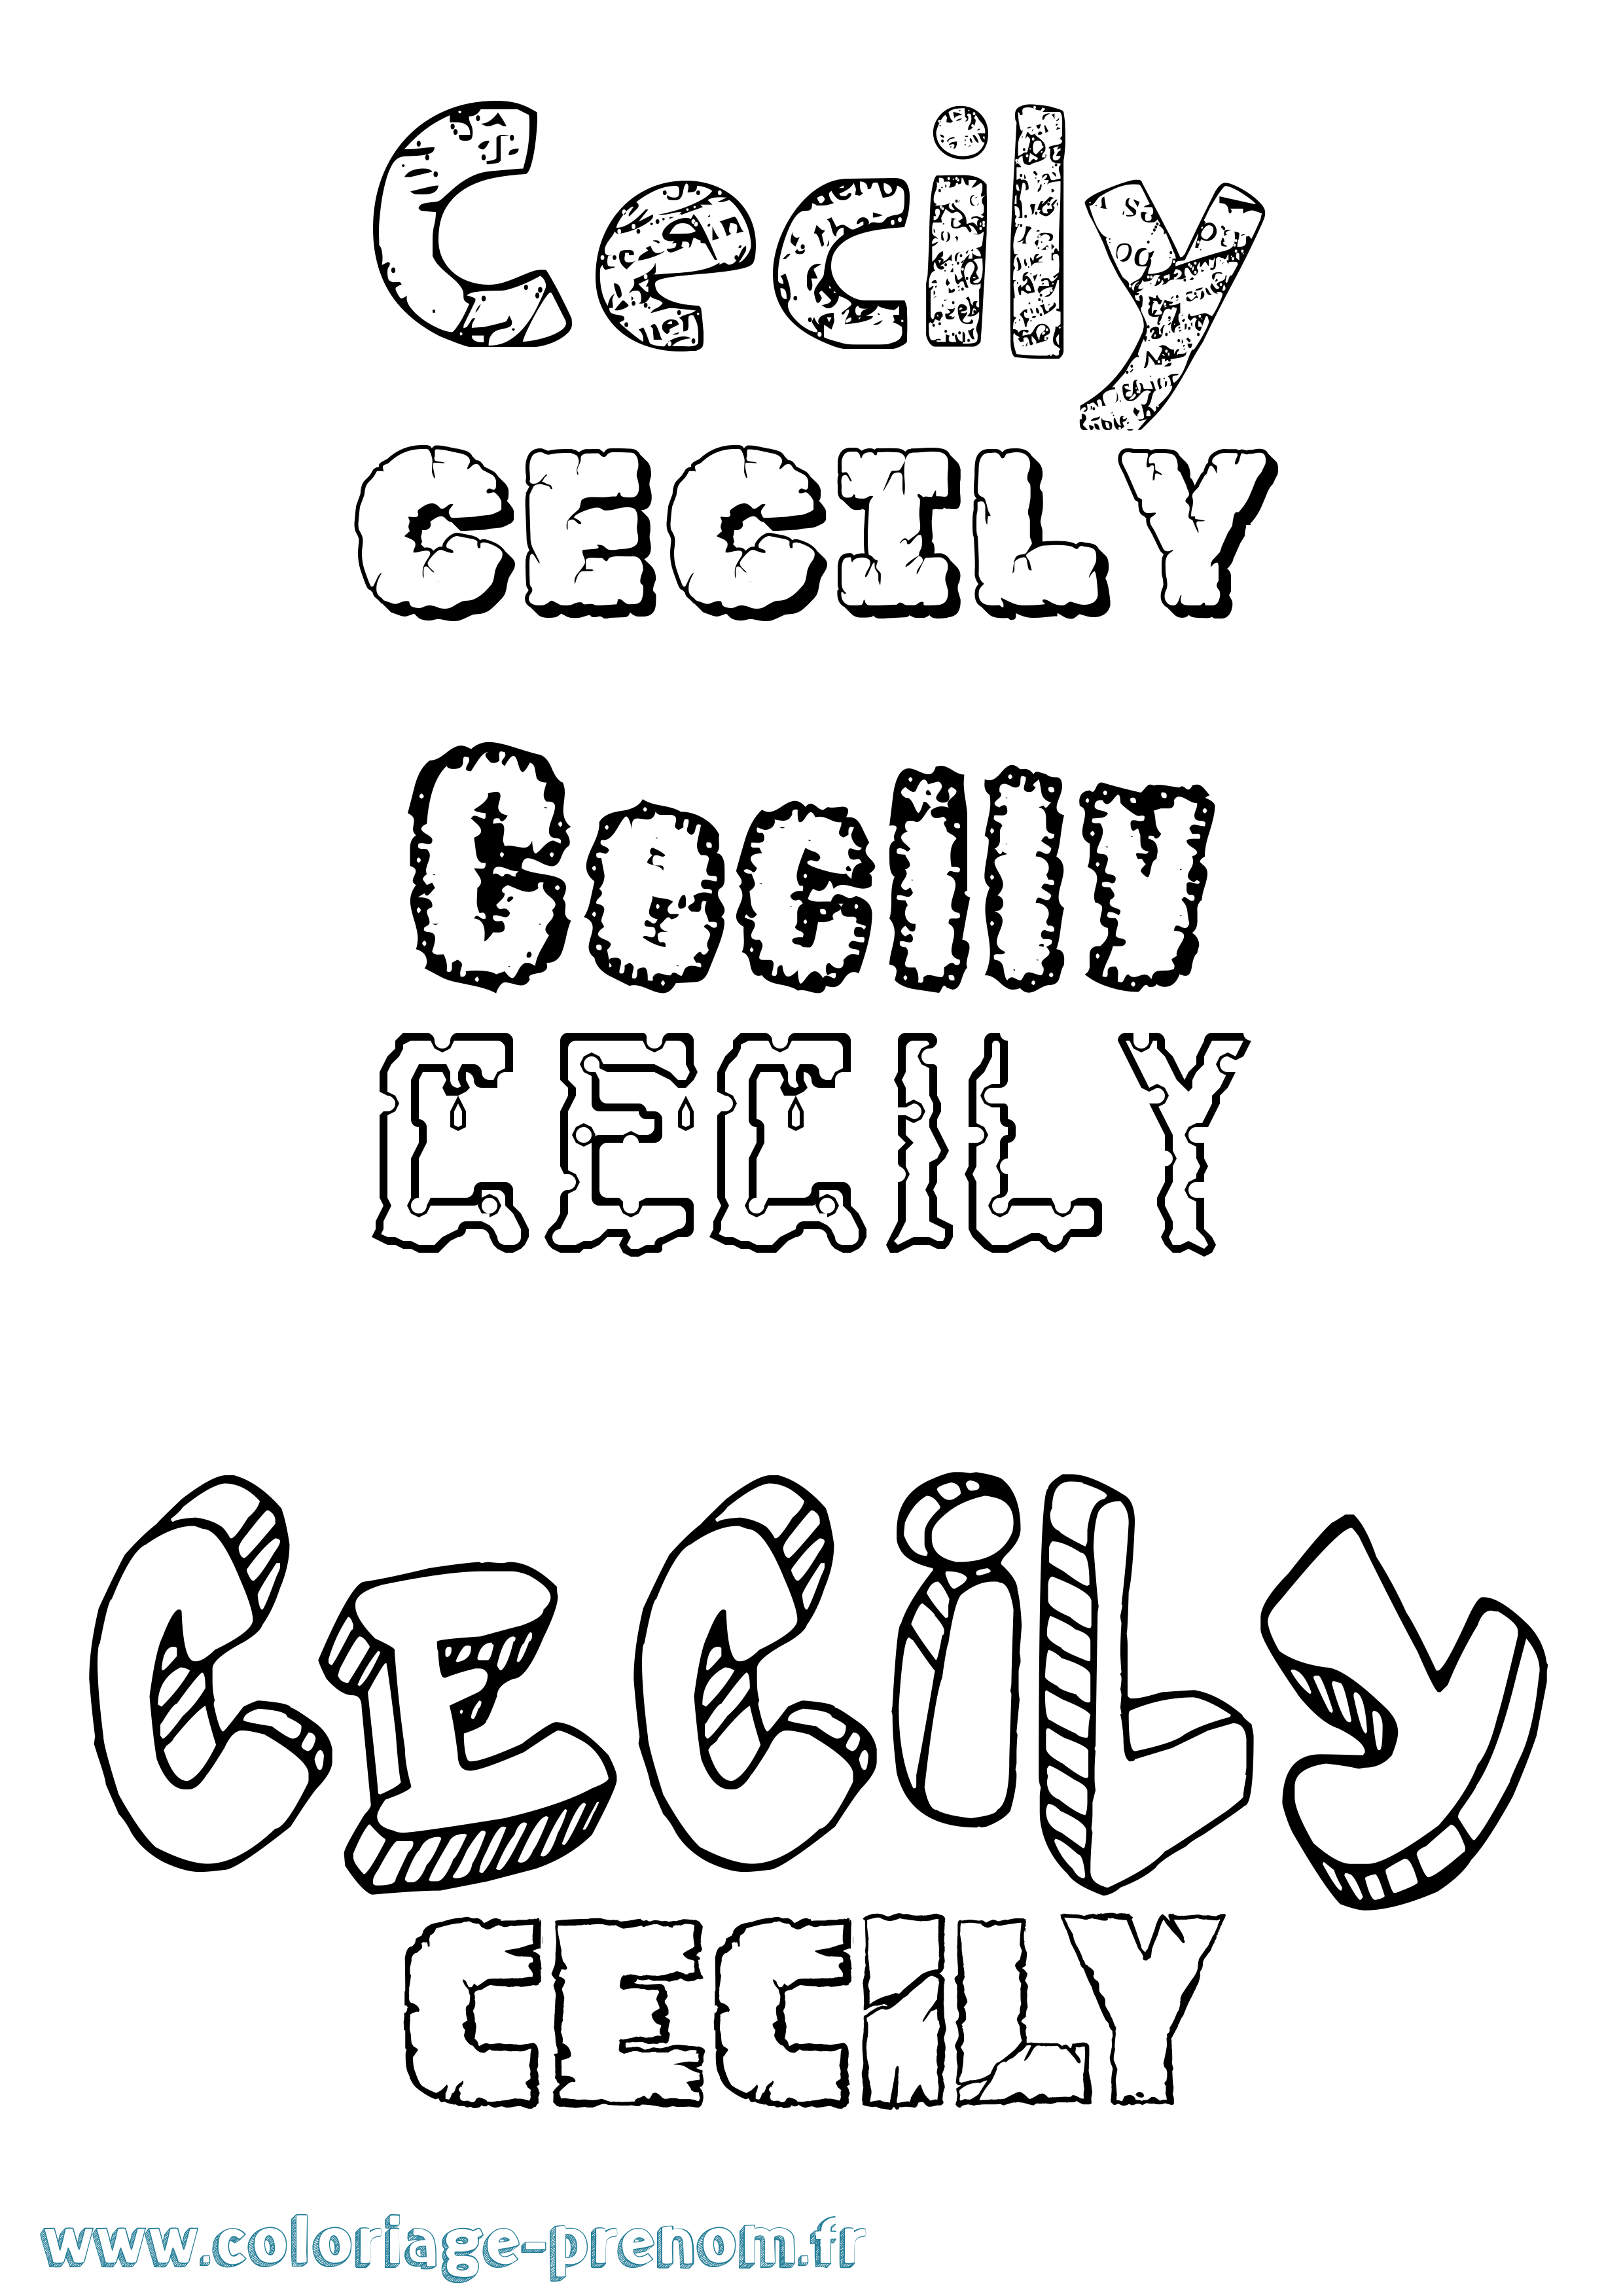 Coloriage prénom Cecily Destructuré